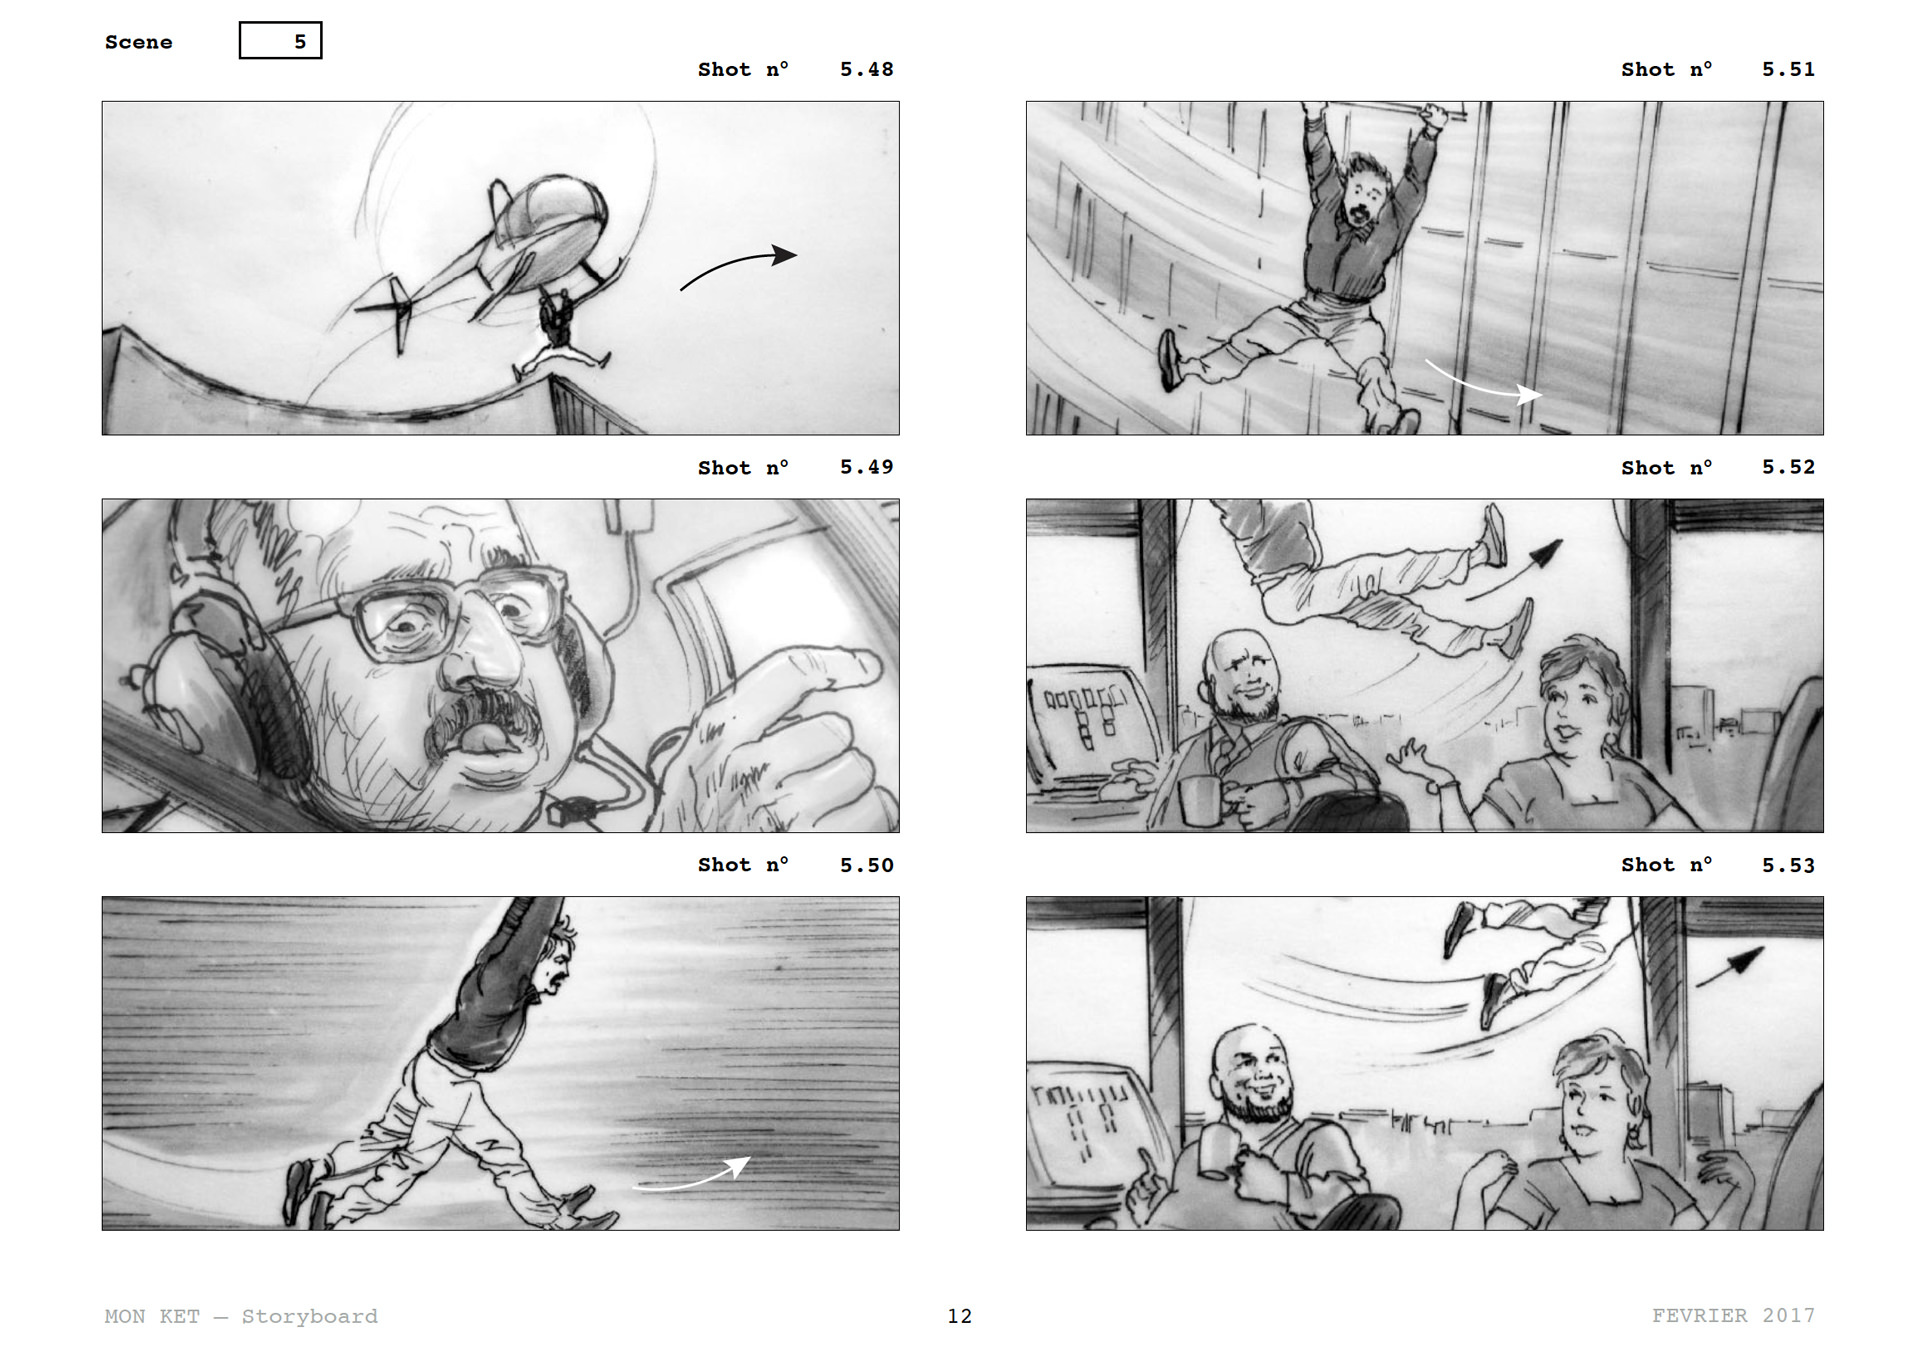 =Mon Ket — Storyboard, scènes d'évasion, page 11